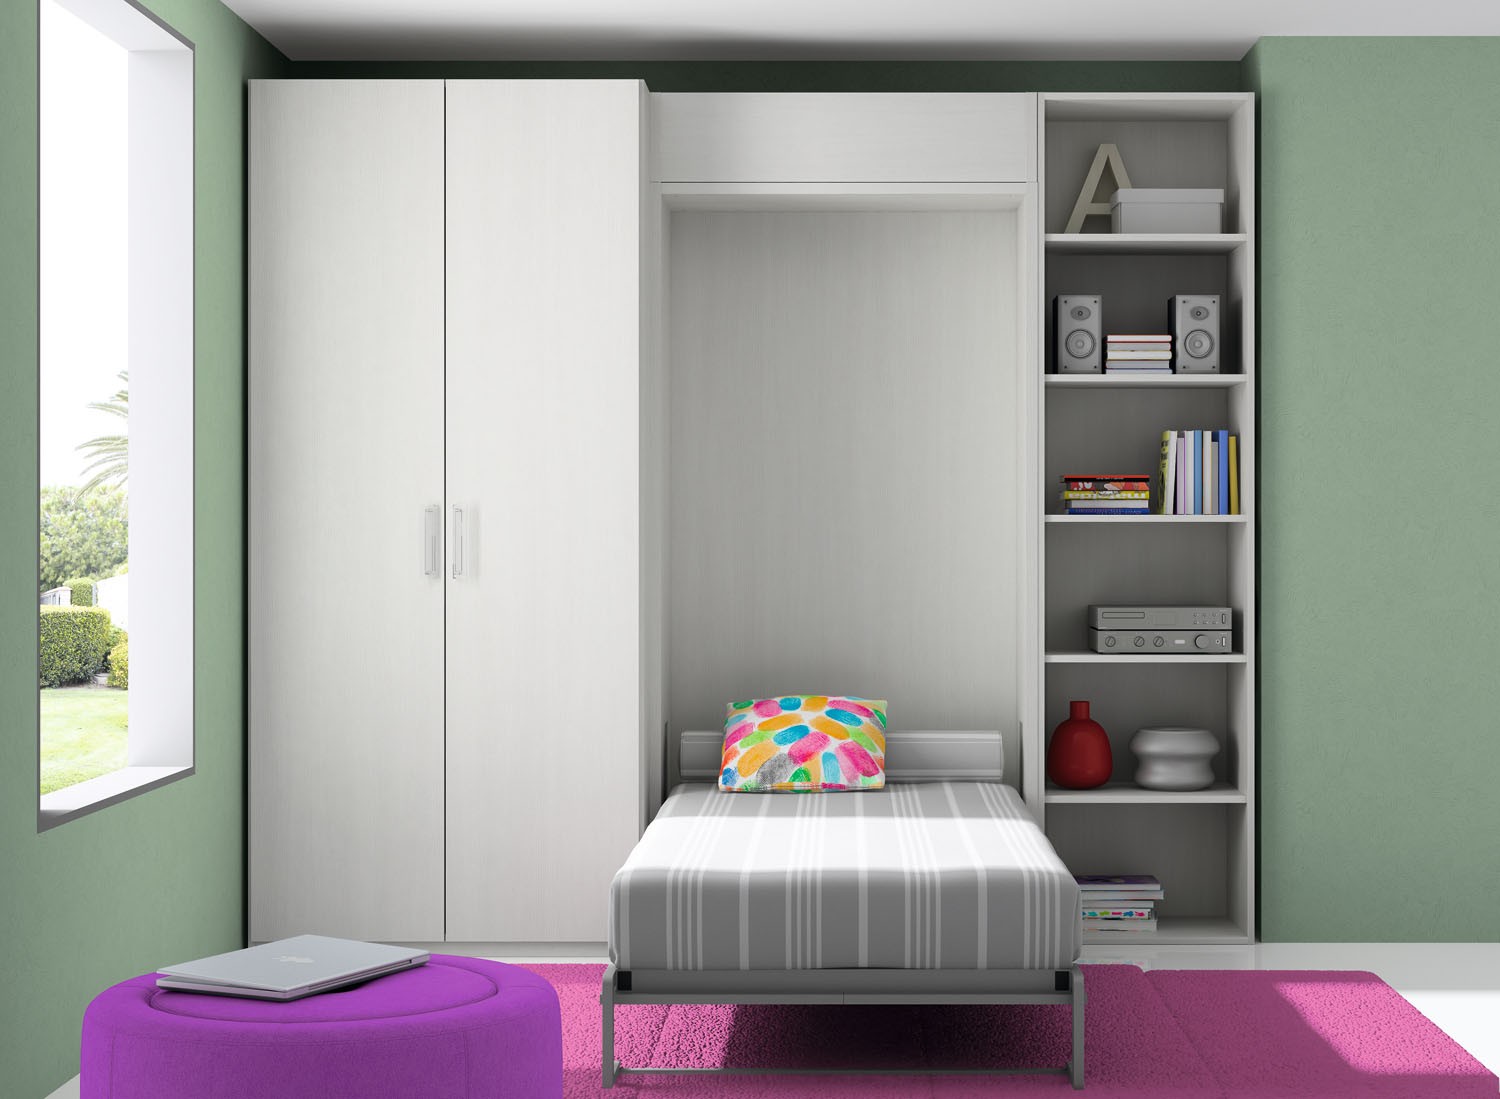 Dormitorio infantil Closet de Dissery-Muebles juveniles Ociohogar.com